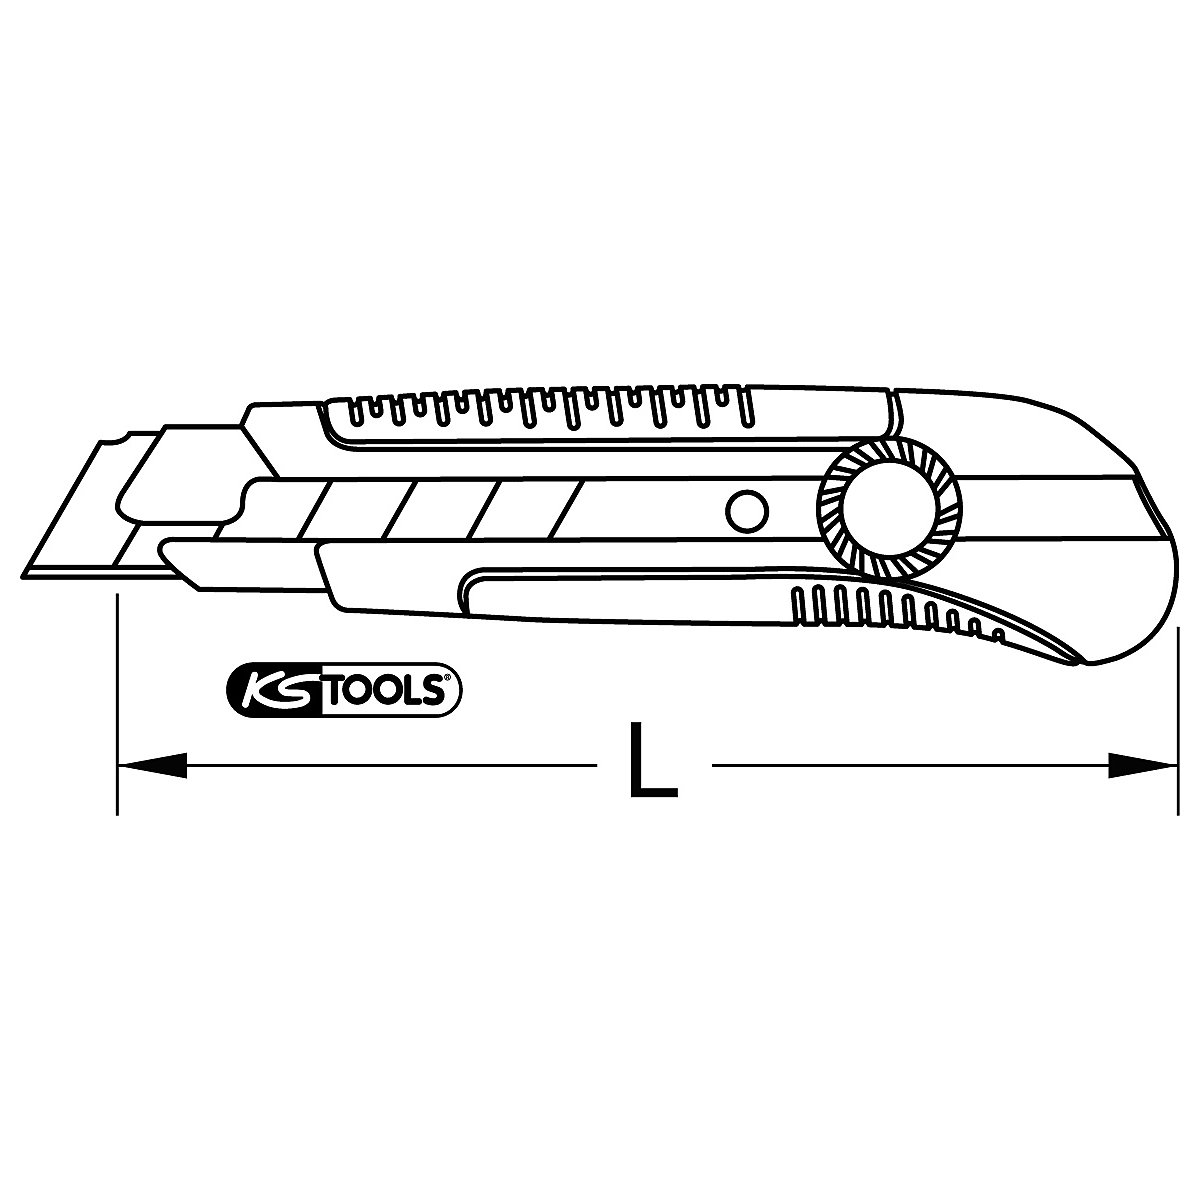 Komfort-Abbrechklingen-Messer KS Tools (Produktabbildung 3)-2